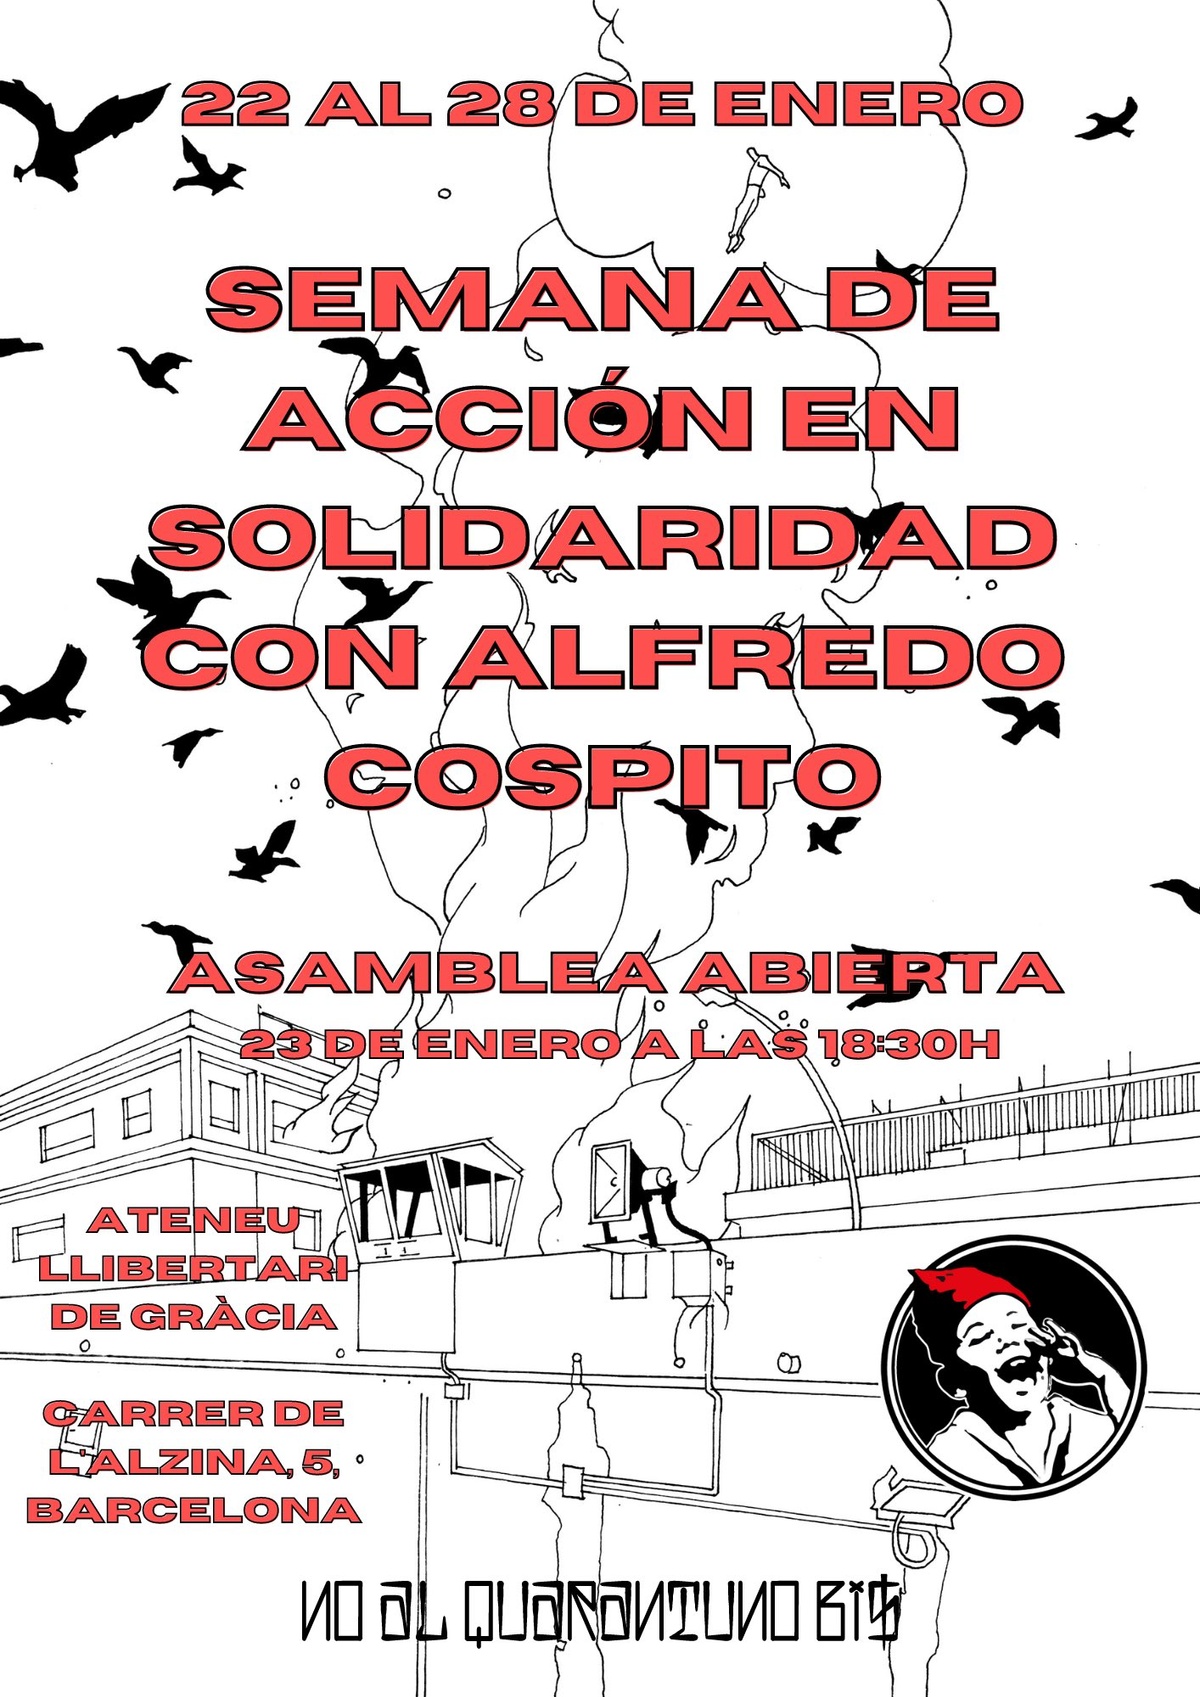 Asamblea abierta, semana de acción en solidaridad con Alfredo Cospito